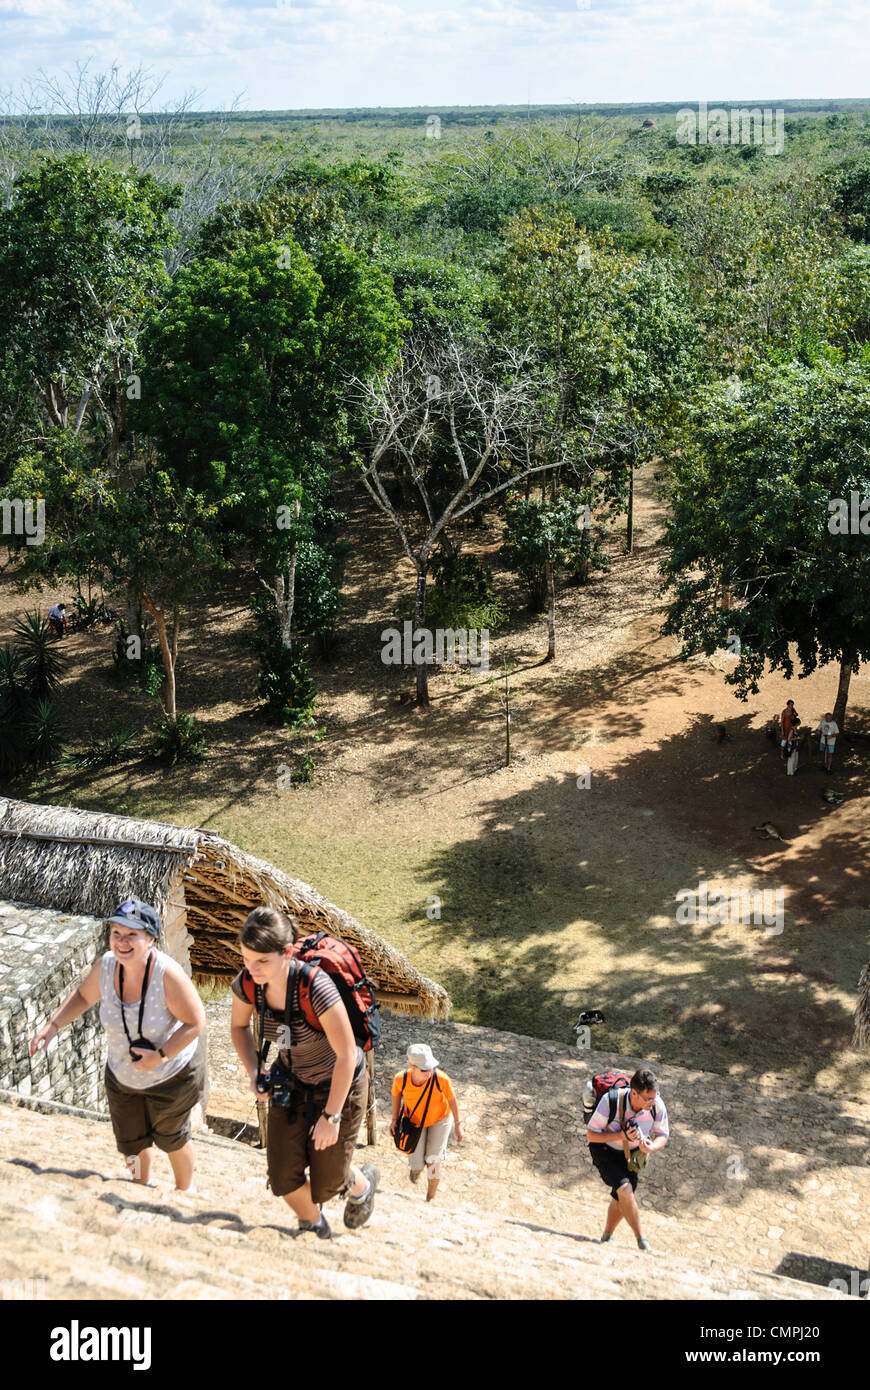 EK BALAM, Messico - i turisti salgono i gradini dell'acropoli di Ek'Balam, una delle civiltà Maya rovine sulla penisola dello Yucatan in Messico non lontano da Coban e Chichen Itza. Foto Stock